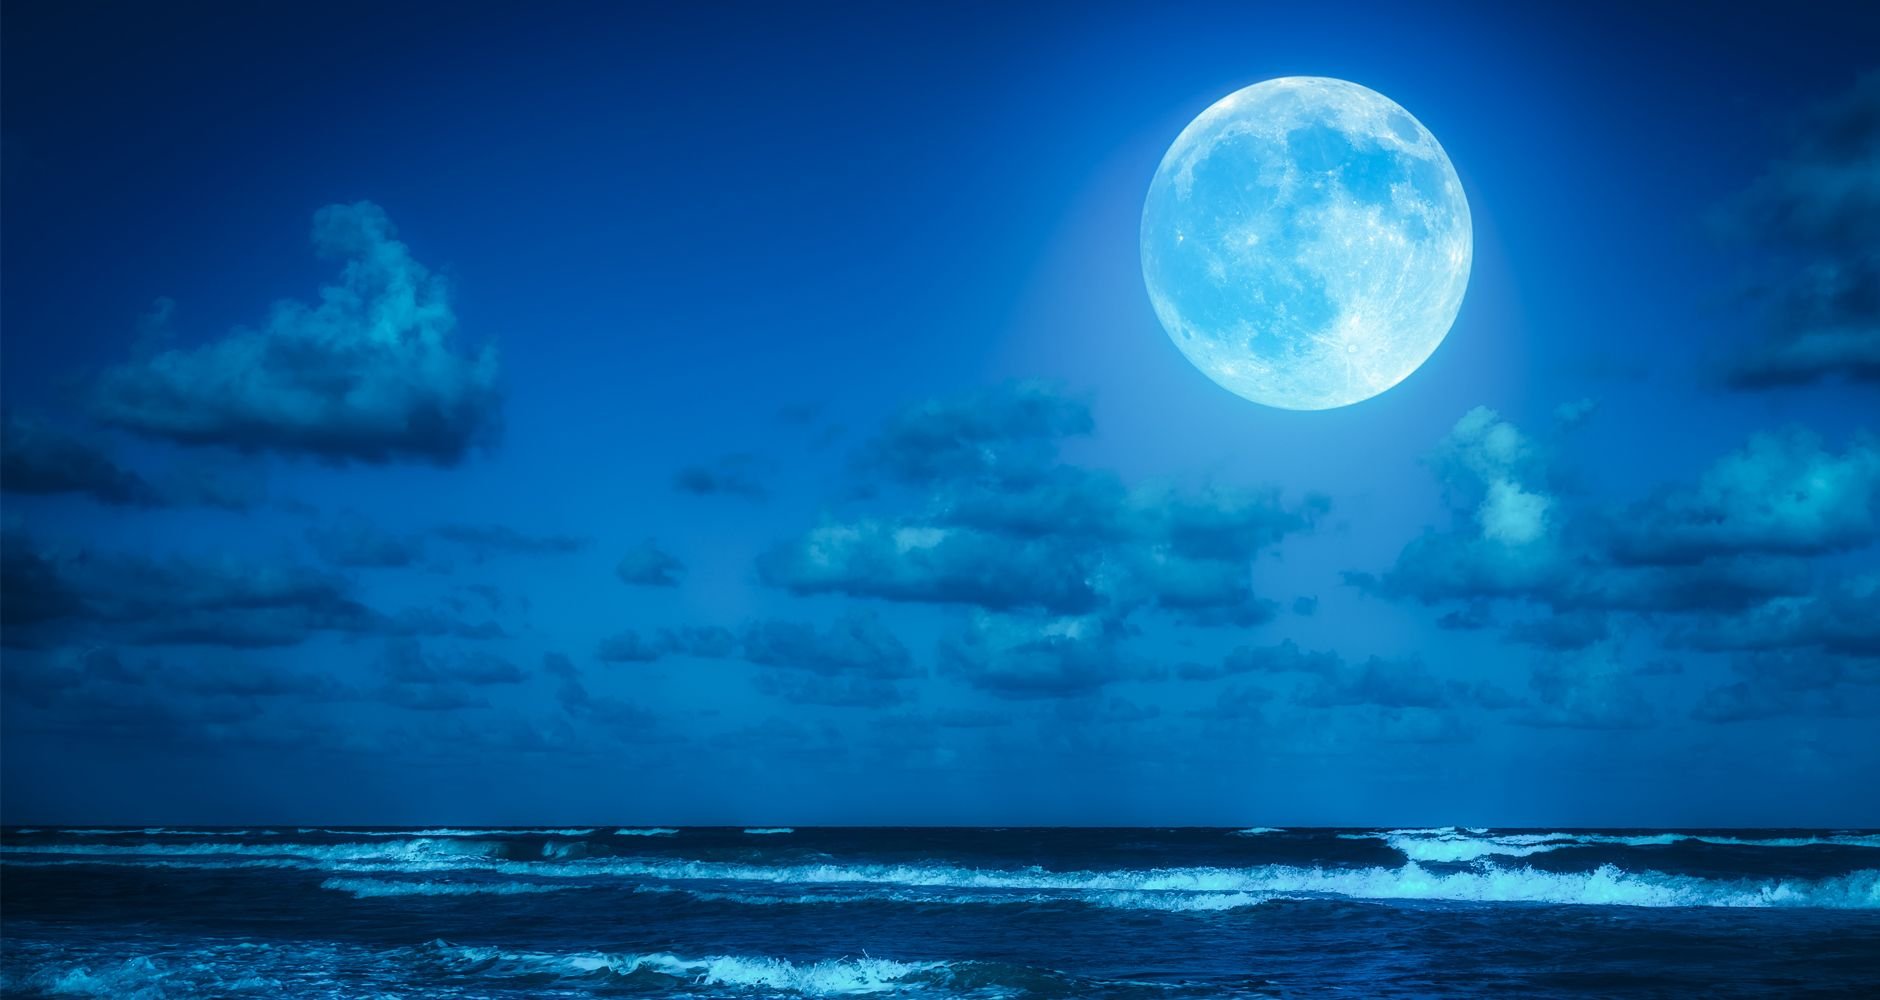 Мун голубое. Голубая Луна астрономическое явление 2020. Синяя Луна. Полнолуние. Полнолуние голубая Луна.